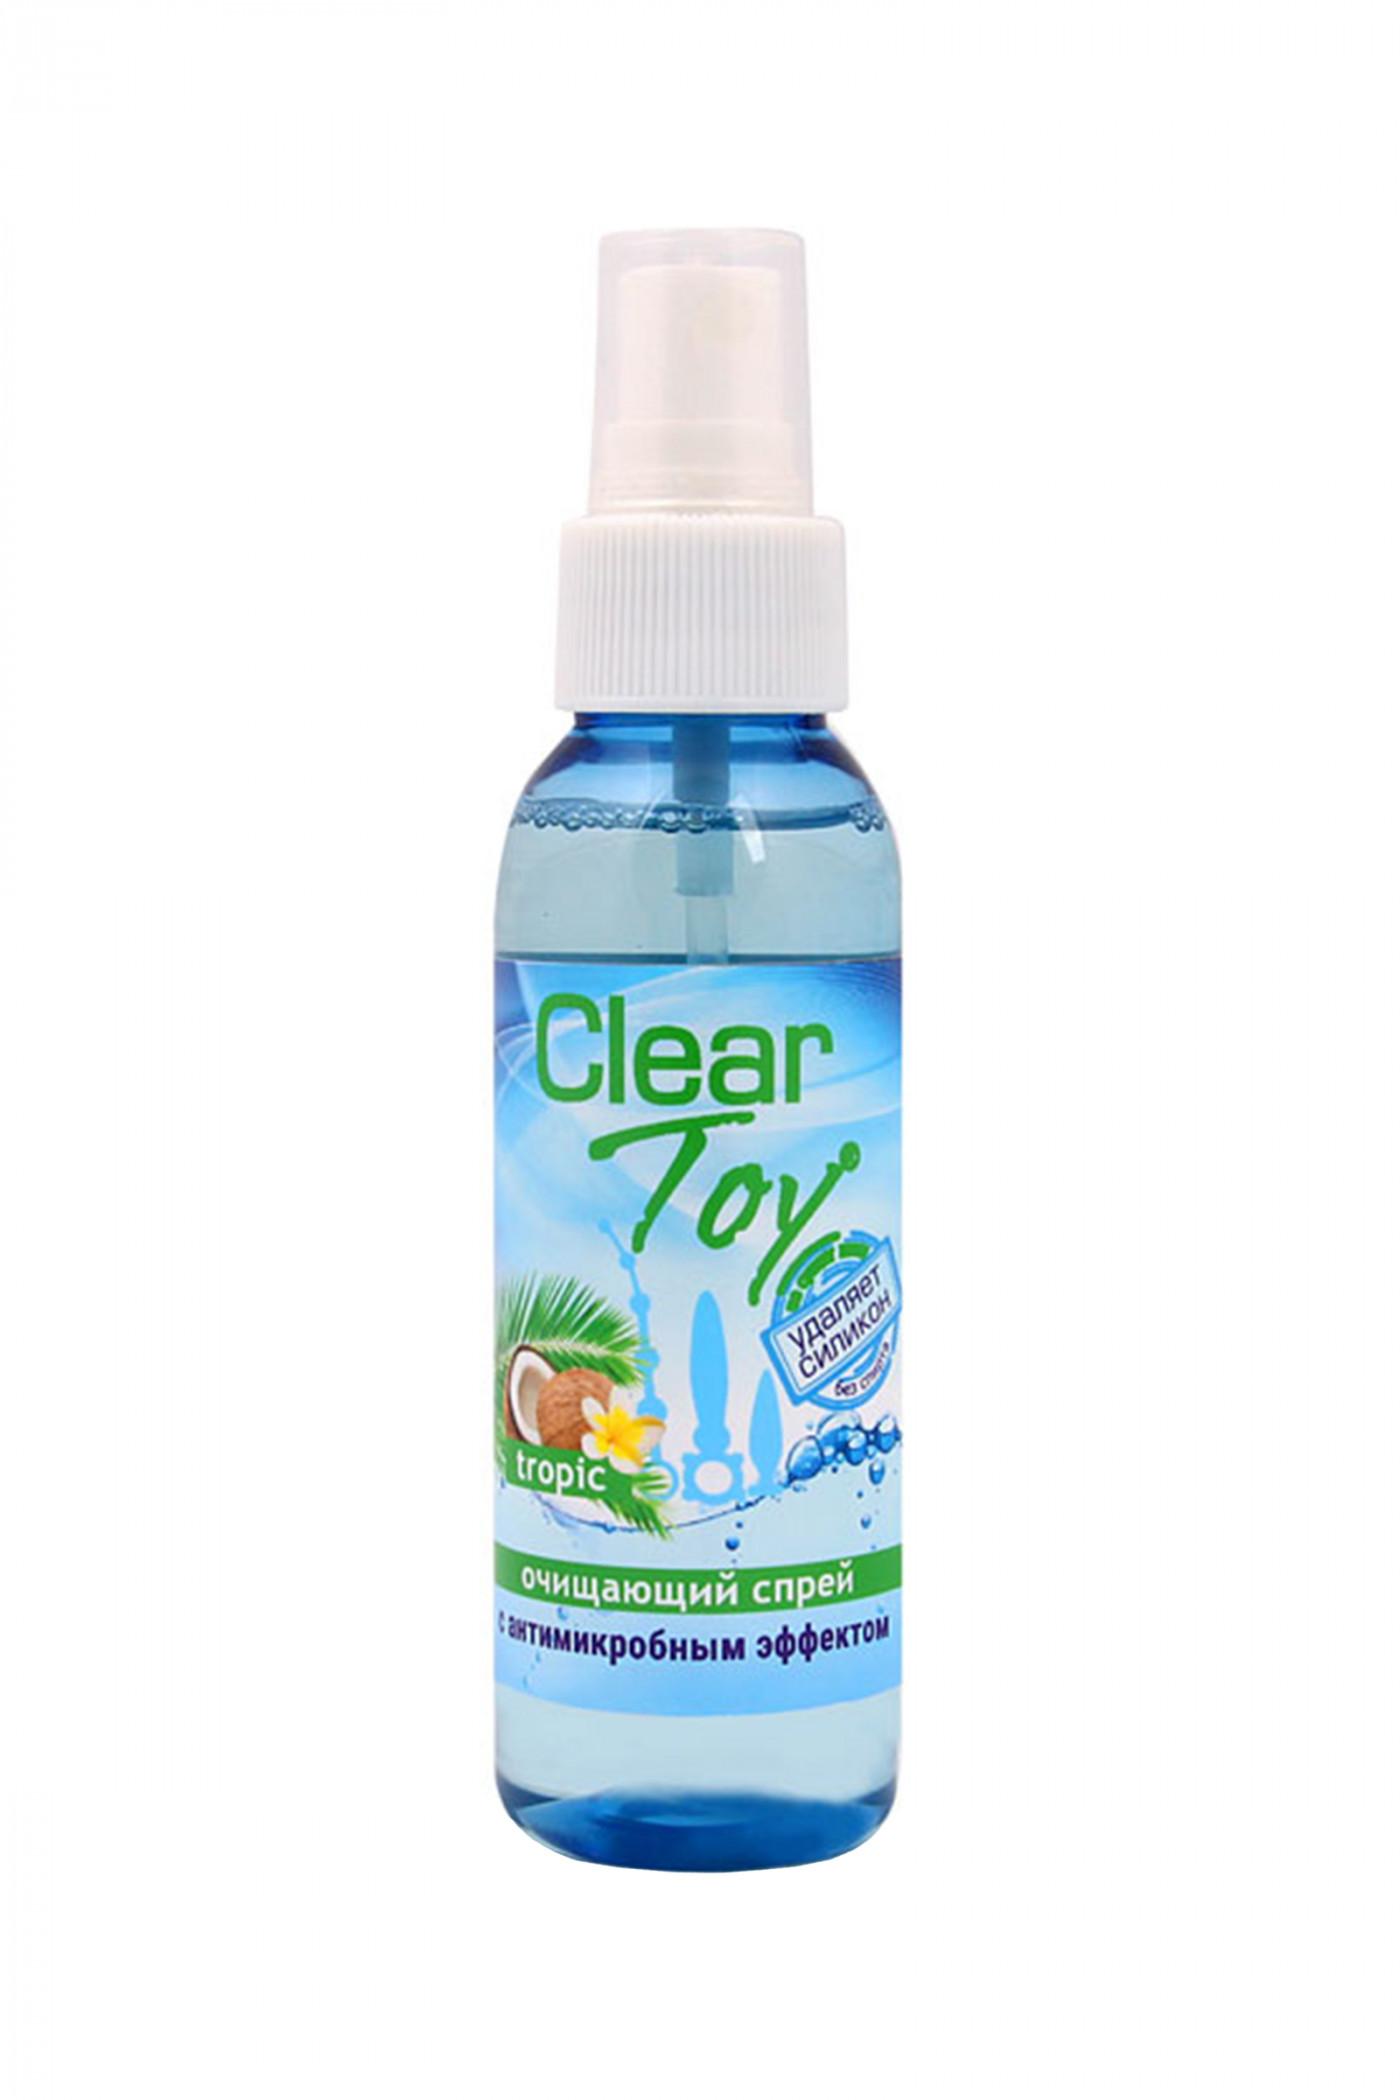 Очищающий спрей  ''Clear toy tropic'' с антимикробным эффектом  100 мл